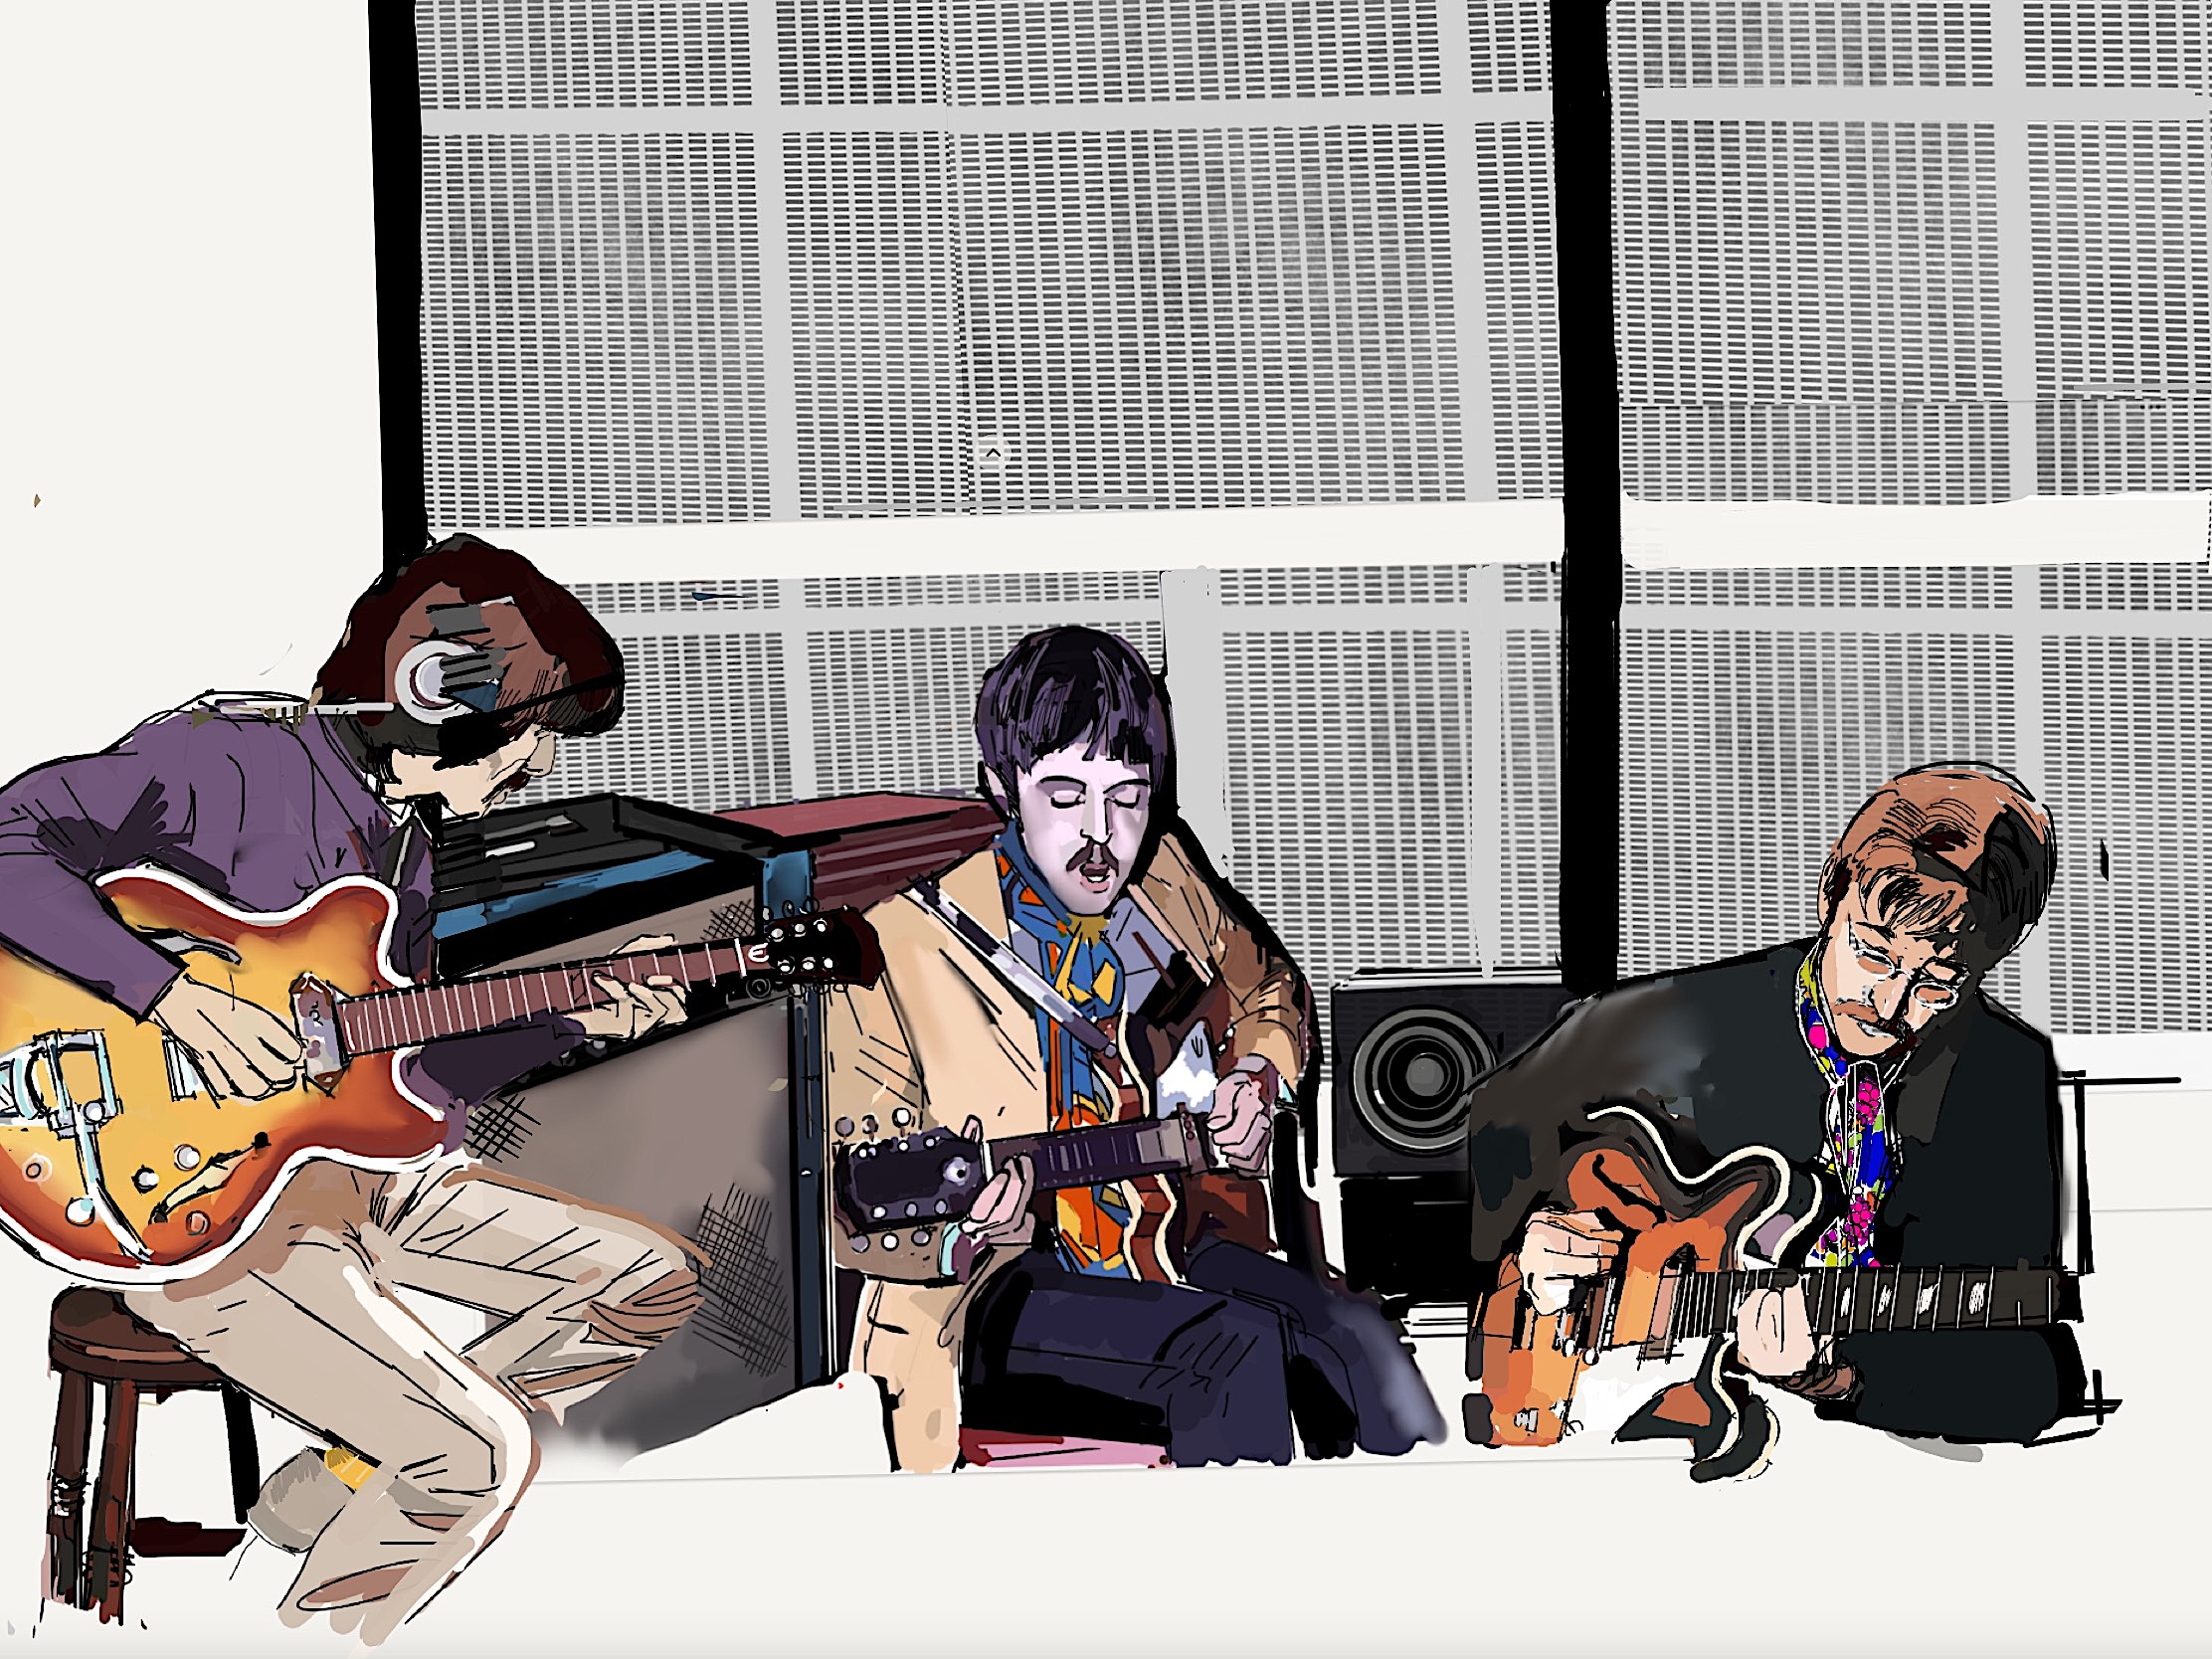 267: Sgt. Pepper’s Guitars